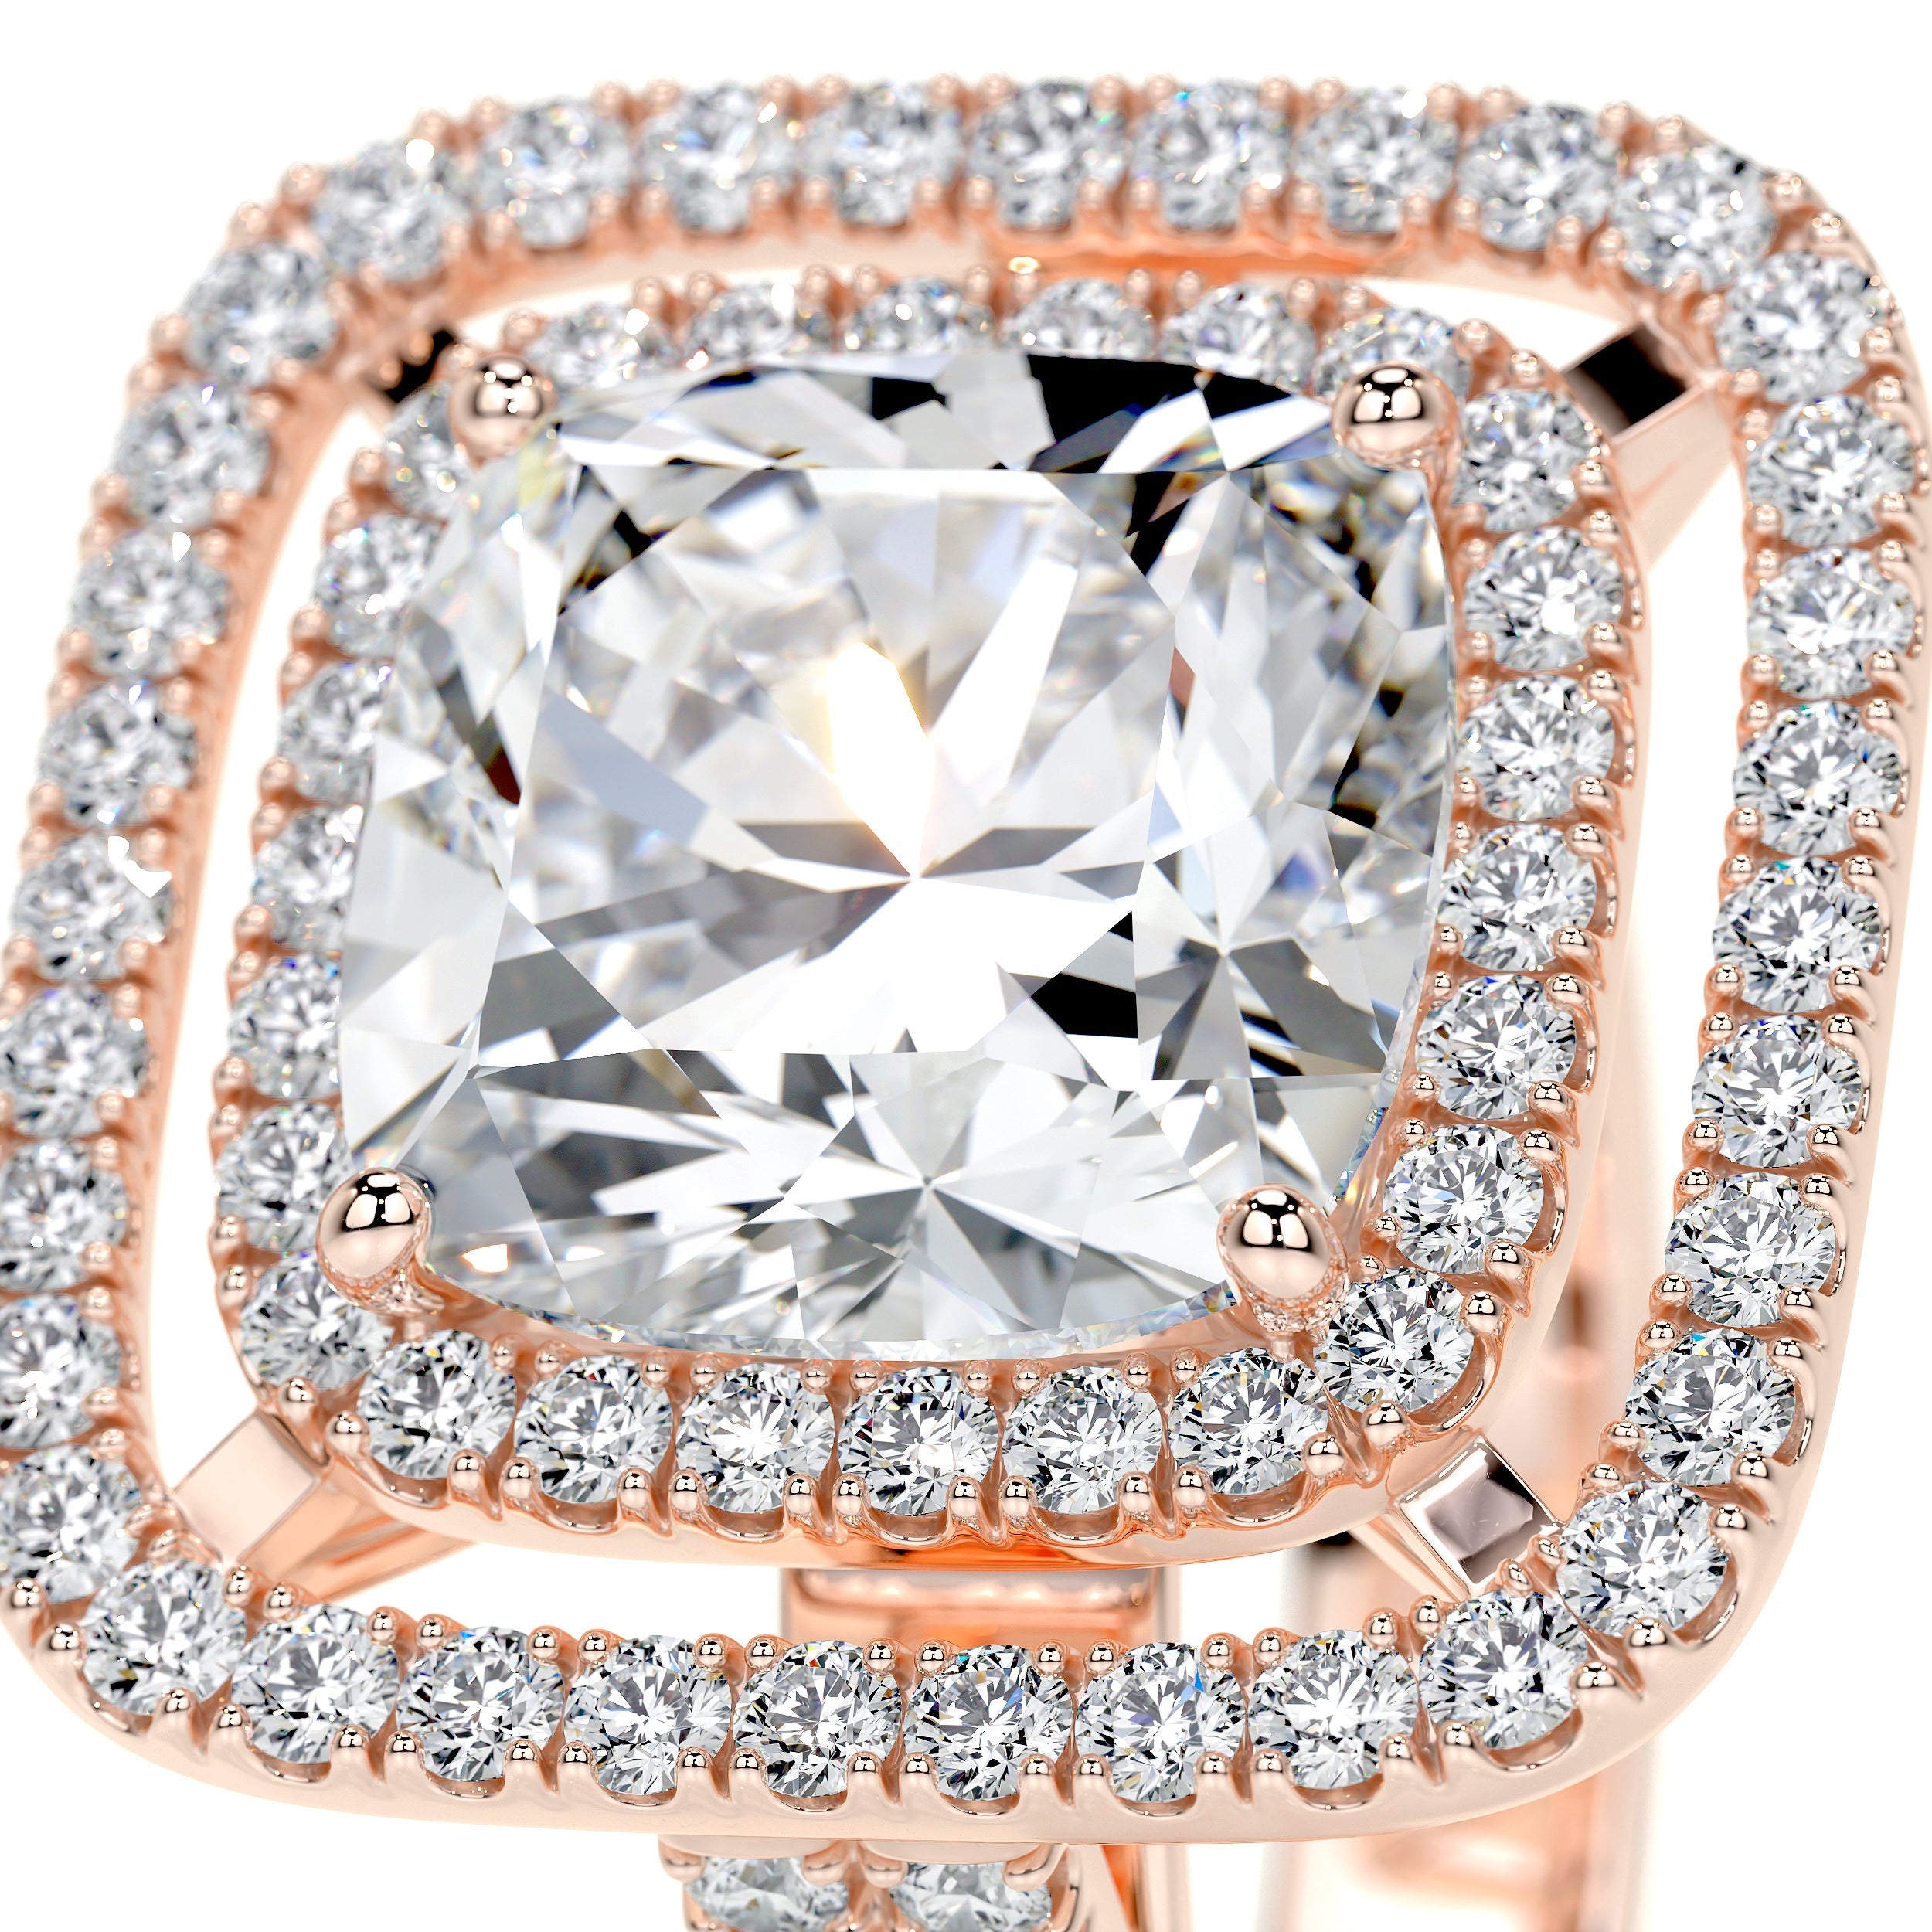 Piper Lab Grown Diamond Ring   (4 Carat) - 14K Rose Gold